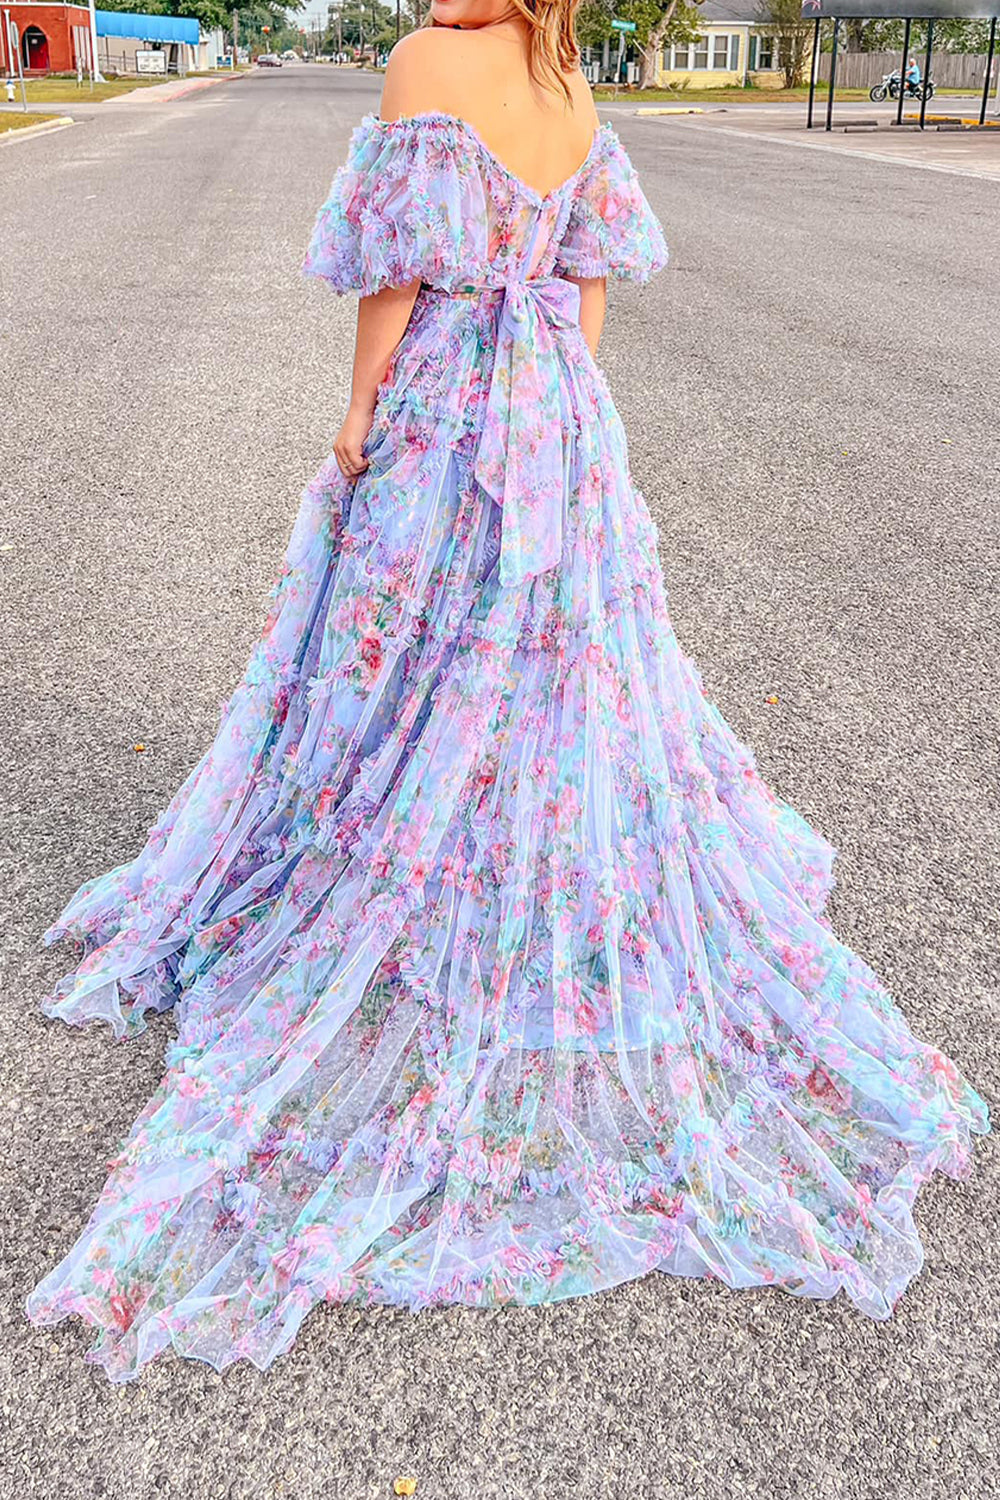 Sydney |A Line Off The Shoulder Floral Tulle Prom Dress